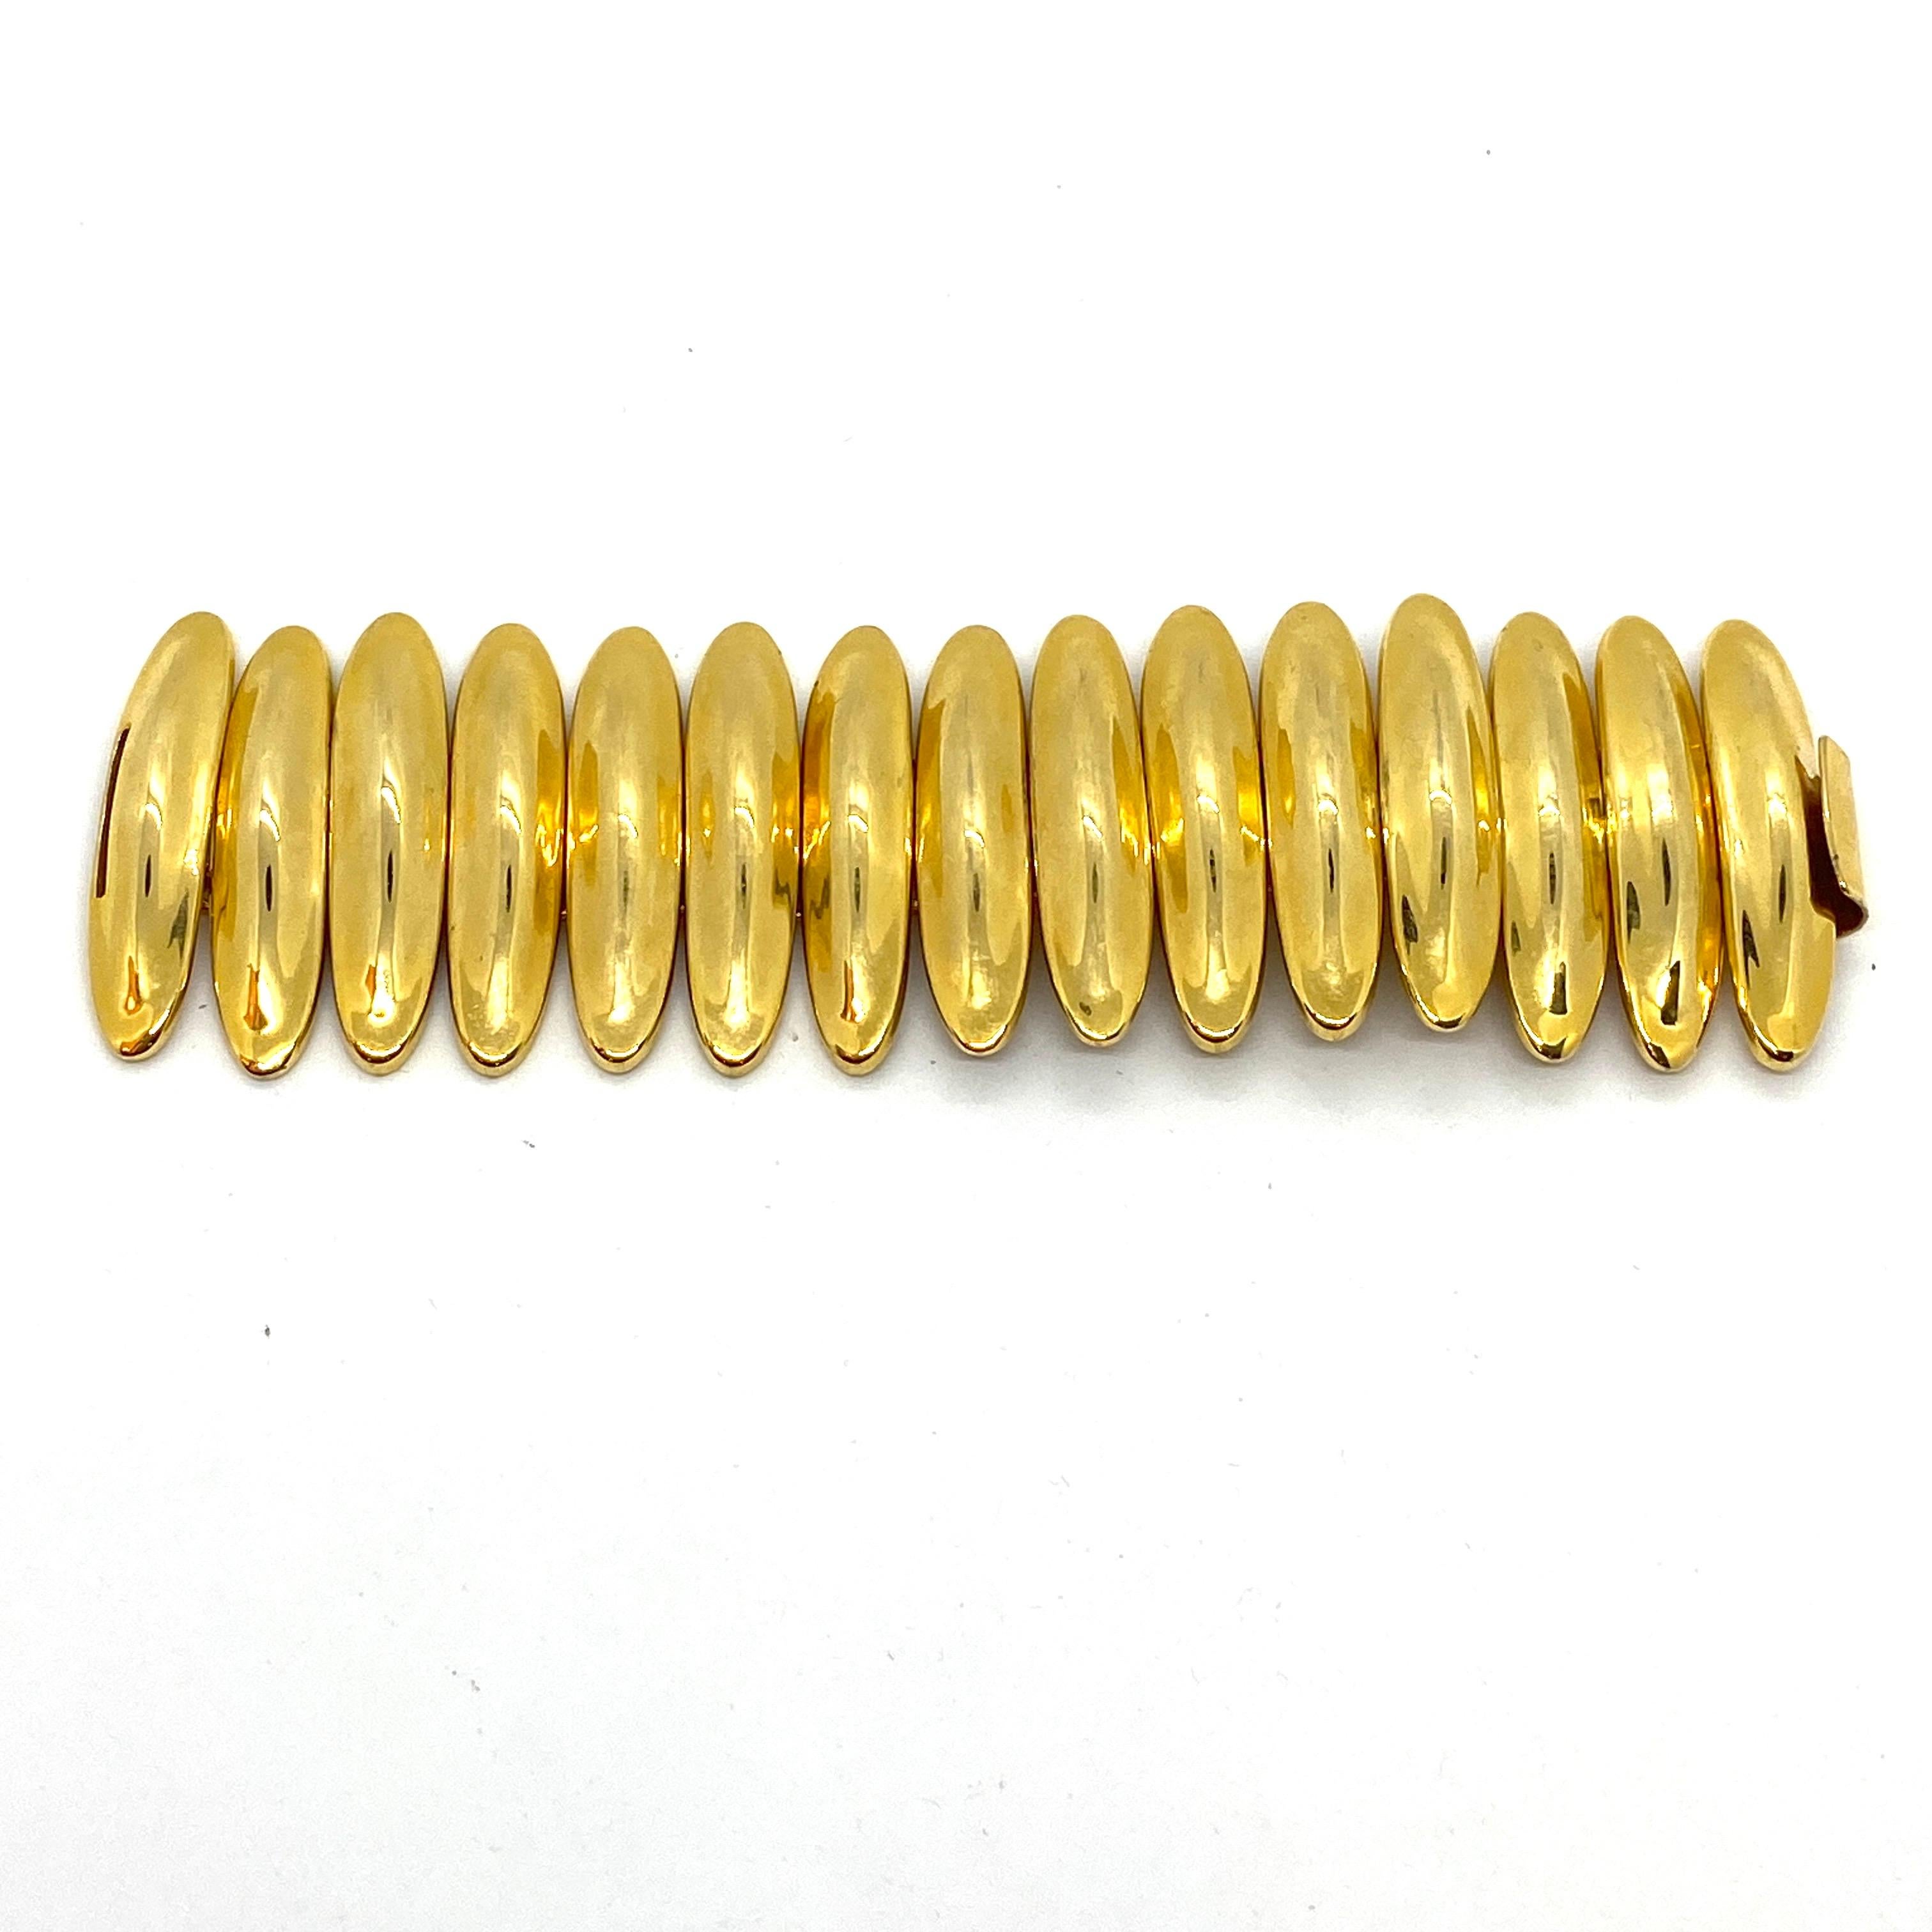 Das Robert Lee Morris Caterpillar Armband ist eine glänzende 18k vergoldete Messinggliederkonstruktion, die sehr fließend, flexibel und sehr angenehm zu tragen ist. Die Breite des goldglänzenden Armbands ist mit 2,25